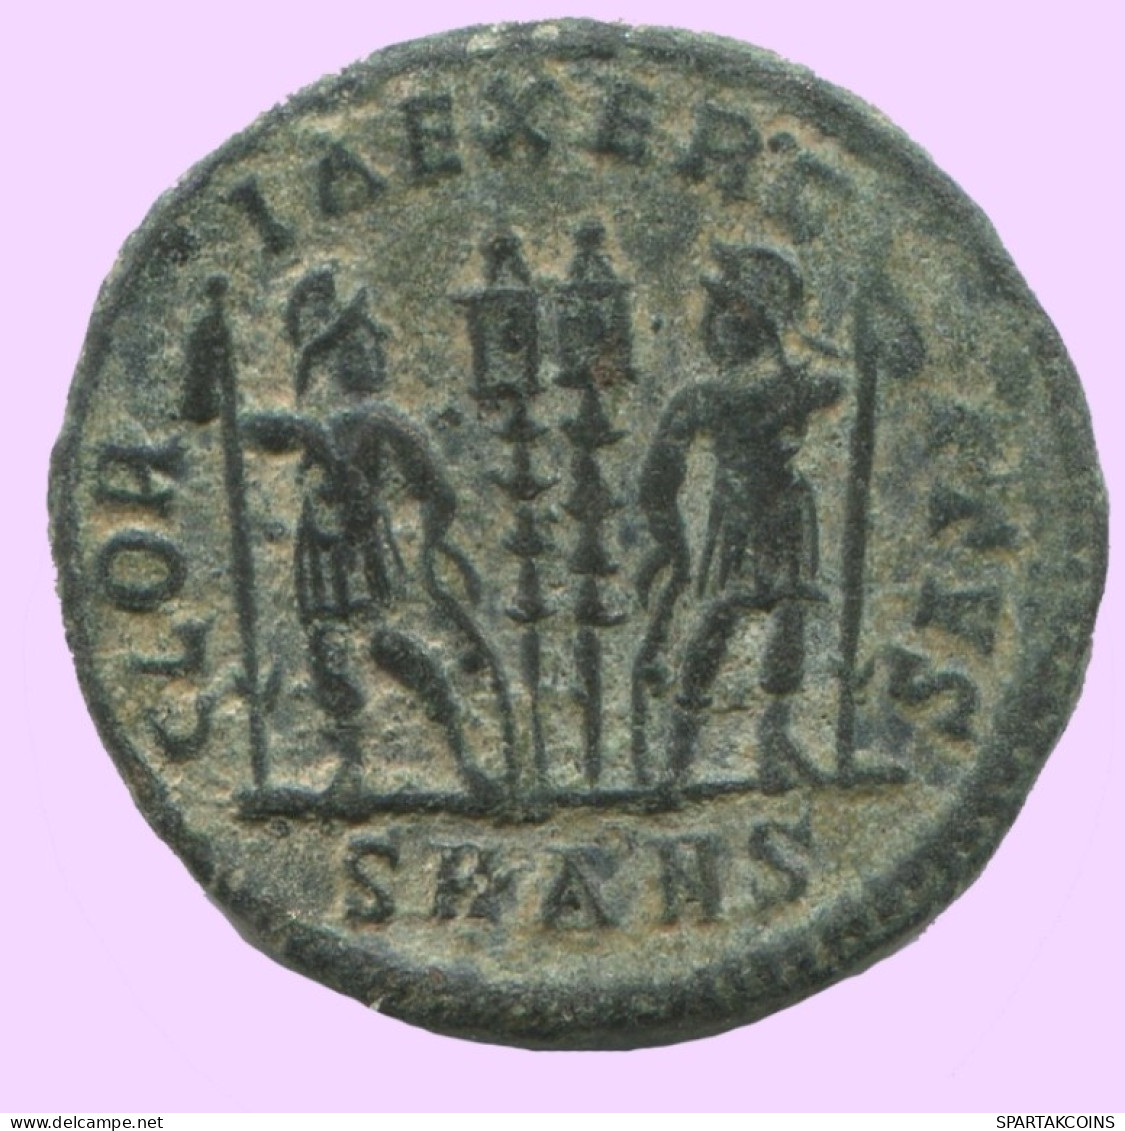 LATE ROMAN EMPIRE Coin Ancient Authentic Roman Coin 2.8g/18mm #ANT2401.14.U.A - Der Spätrömanischen Reich (363 / 476)